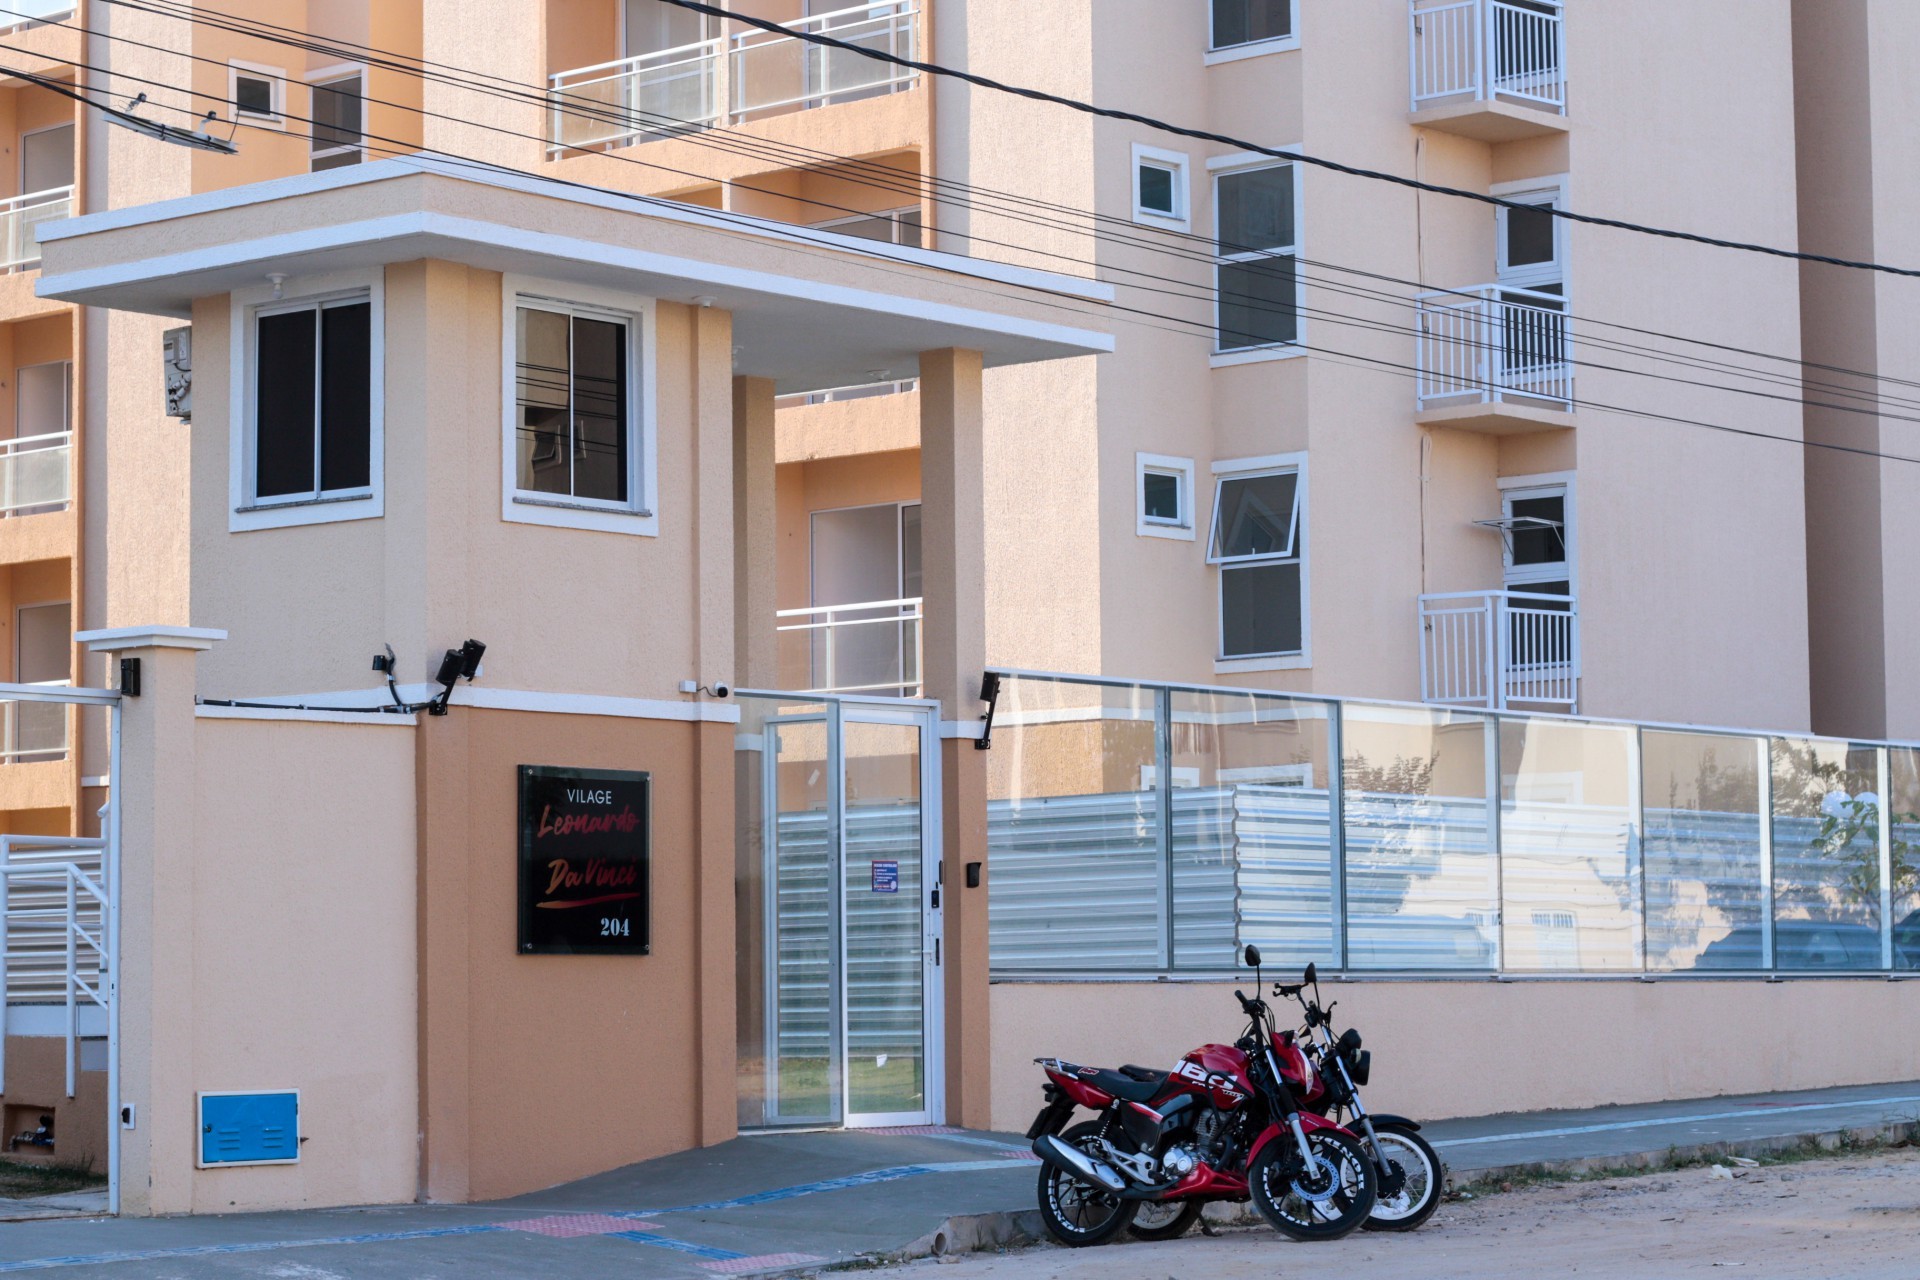 EMPREENDIMENTO da Construtora Montenegro, com apartamentos na faixa do Casa Verde e Amarela, tem somente quatro unidades disponíveis (Foto: BARBARA MOIRA)